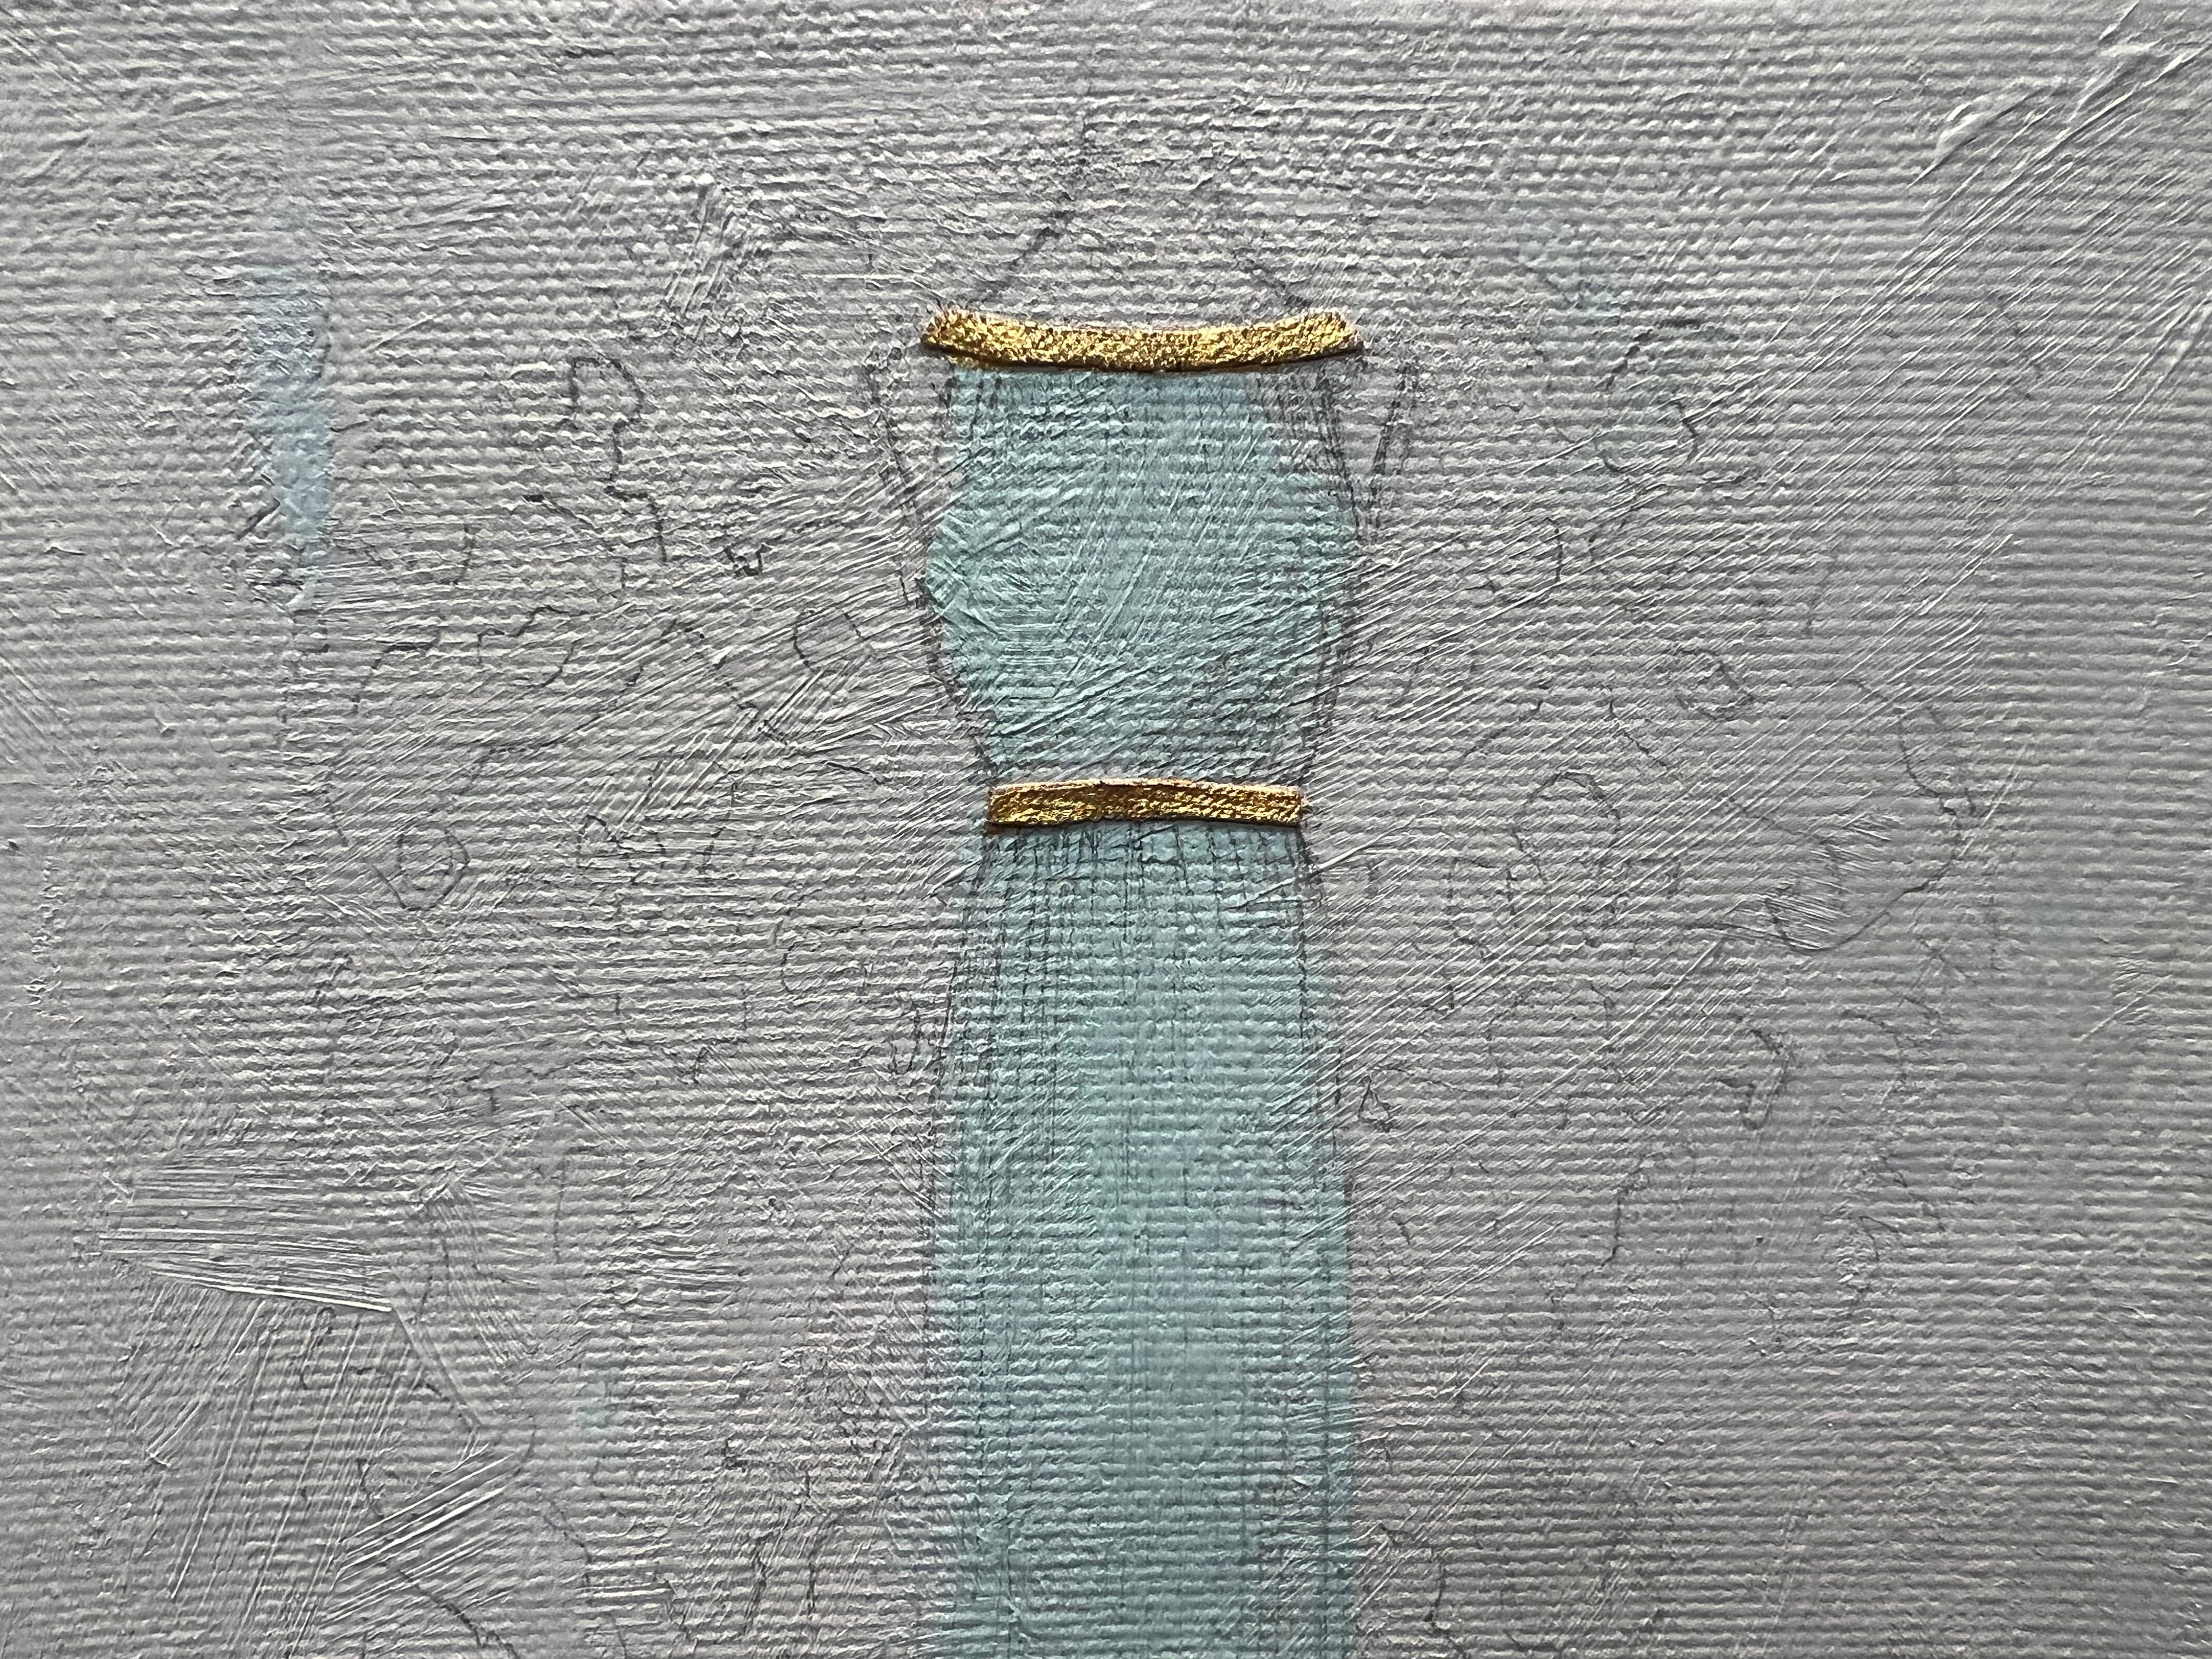 Inspirée par l'héritage des tissus Fortuny, cette robe-peinture adopte une esthétique minimaliste. Les textures ton sur ton sont construites à l'aide d'un mélange de peinture, de crayon et d'un accent de tissu Fortuny. La combinaison d'un travail au